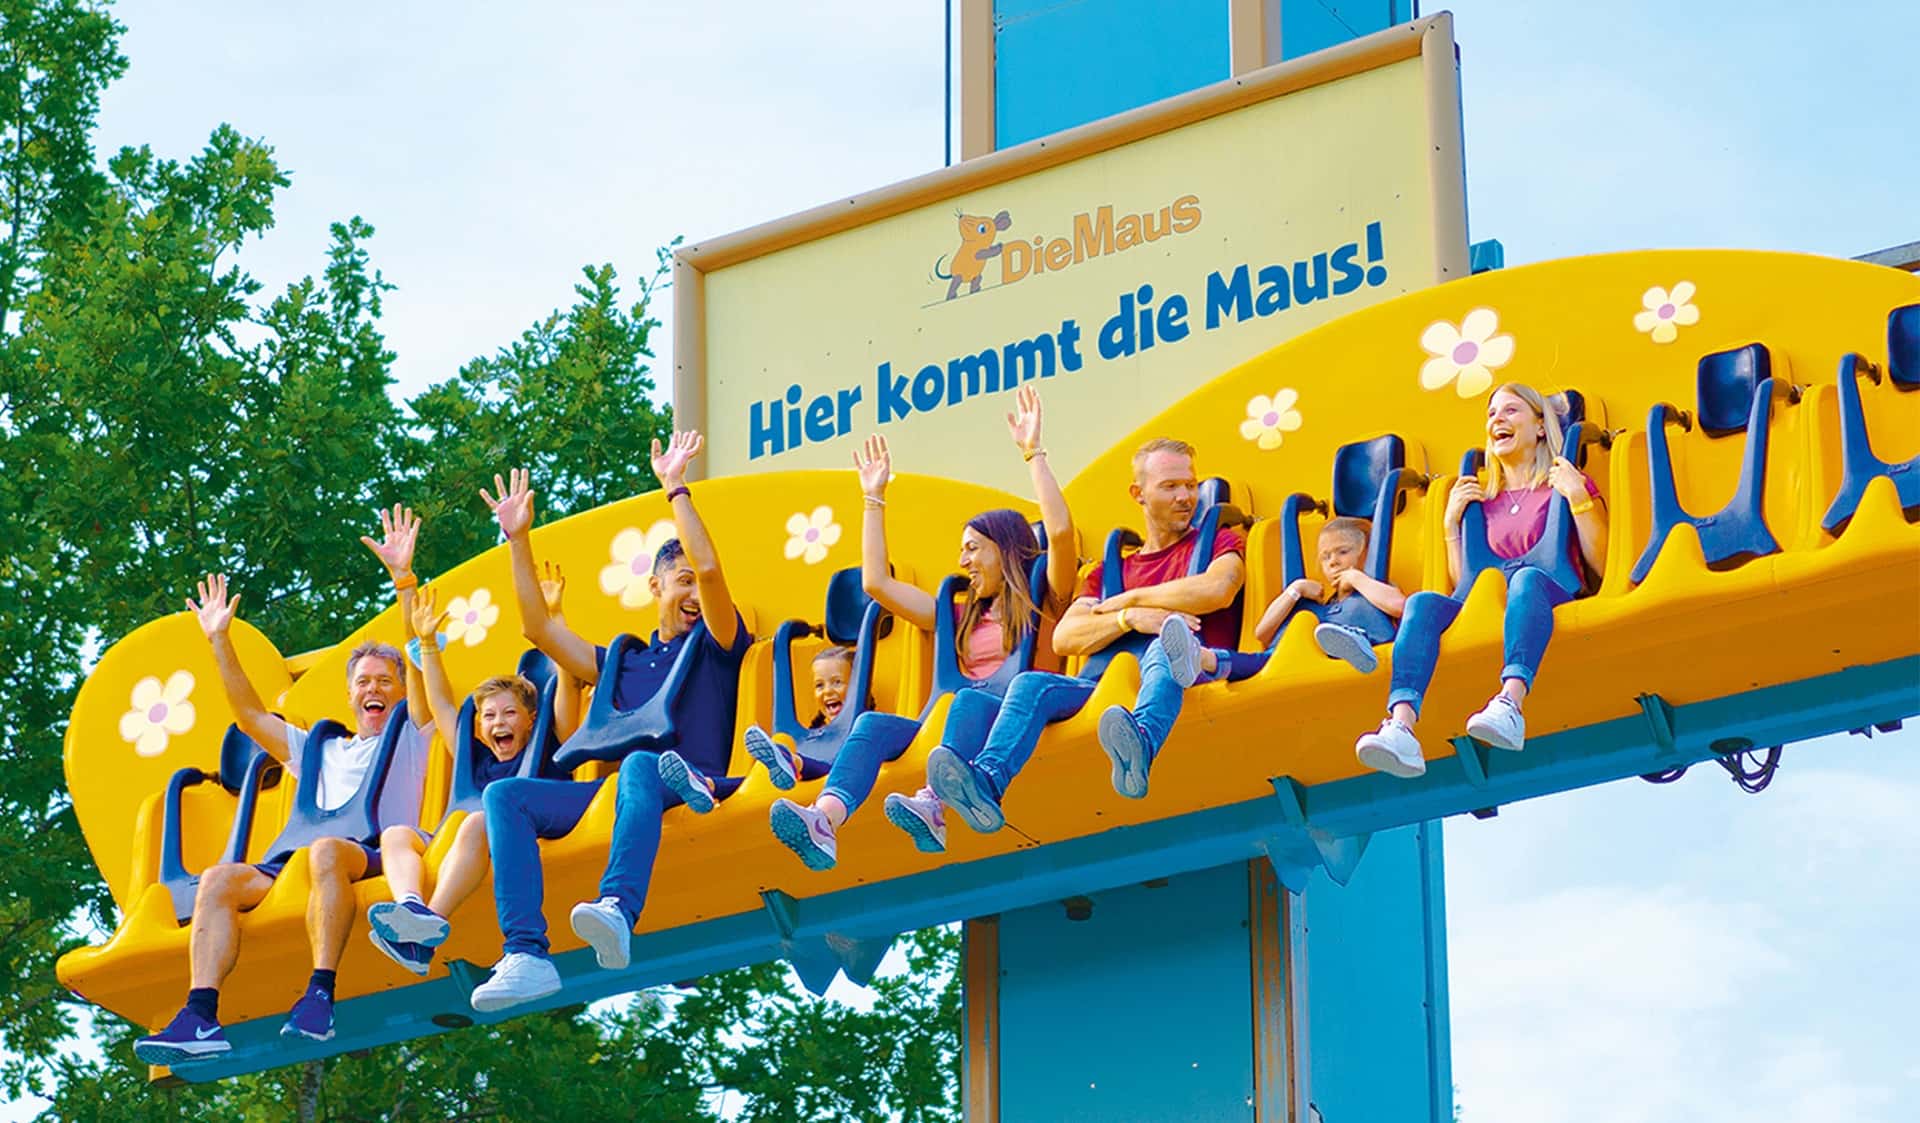 Lachende Familien mit den Händen in der Luft im orangefarbenen Freifallturm.